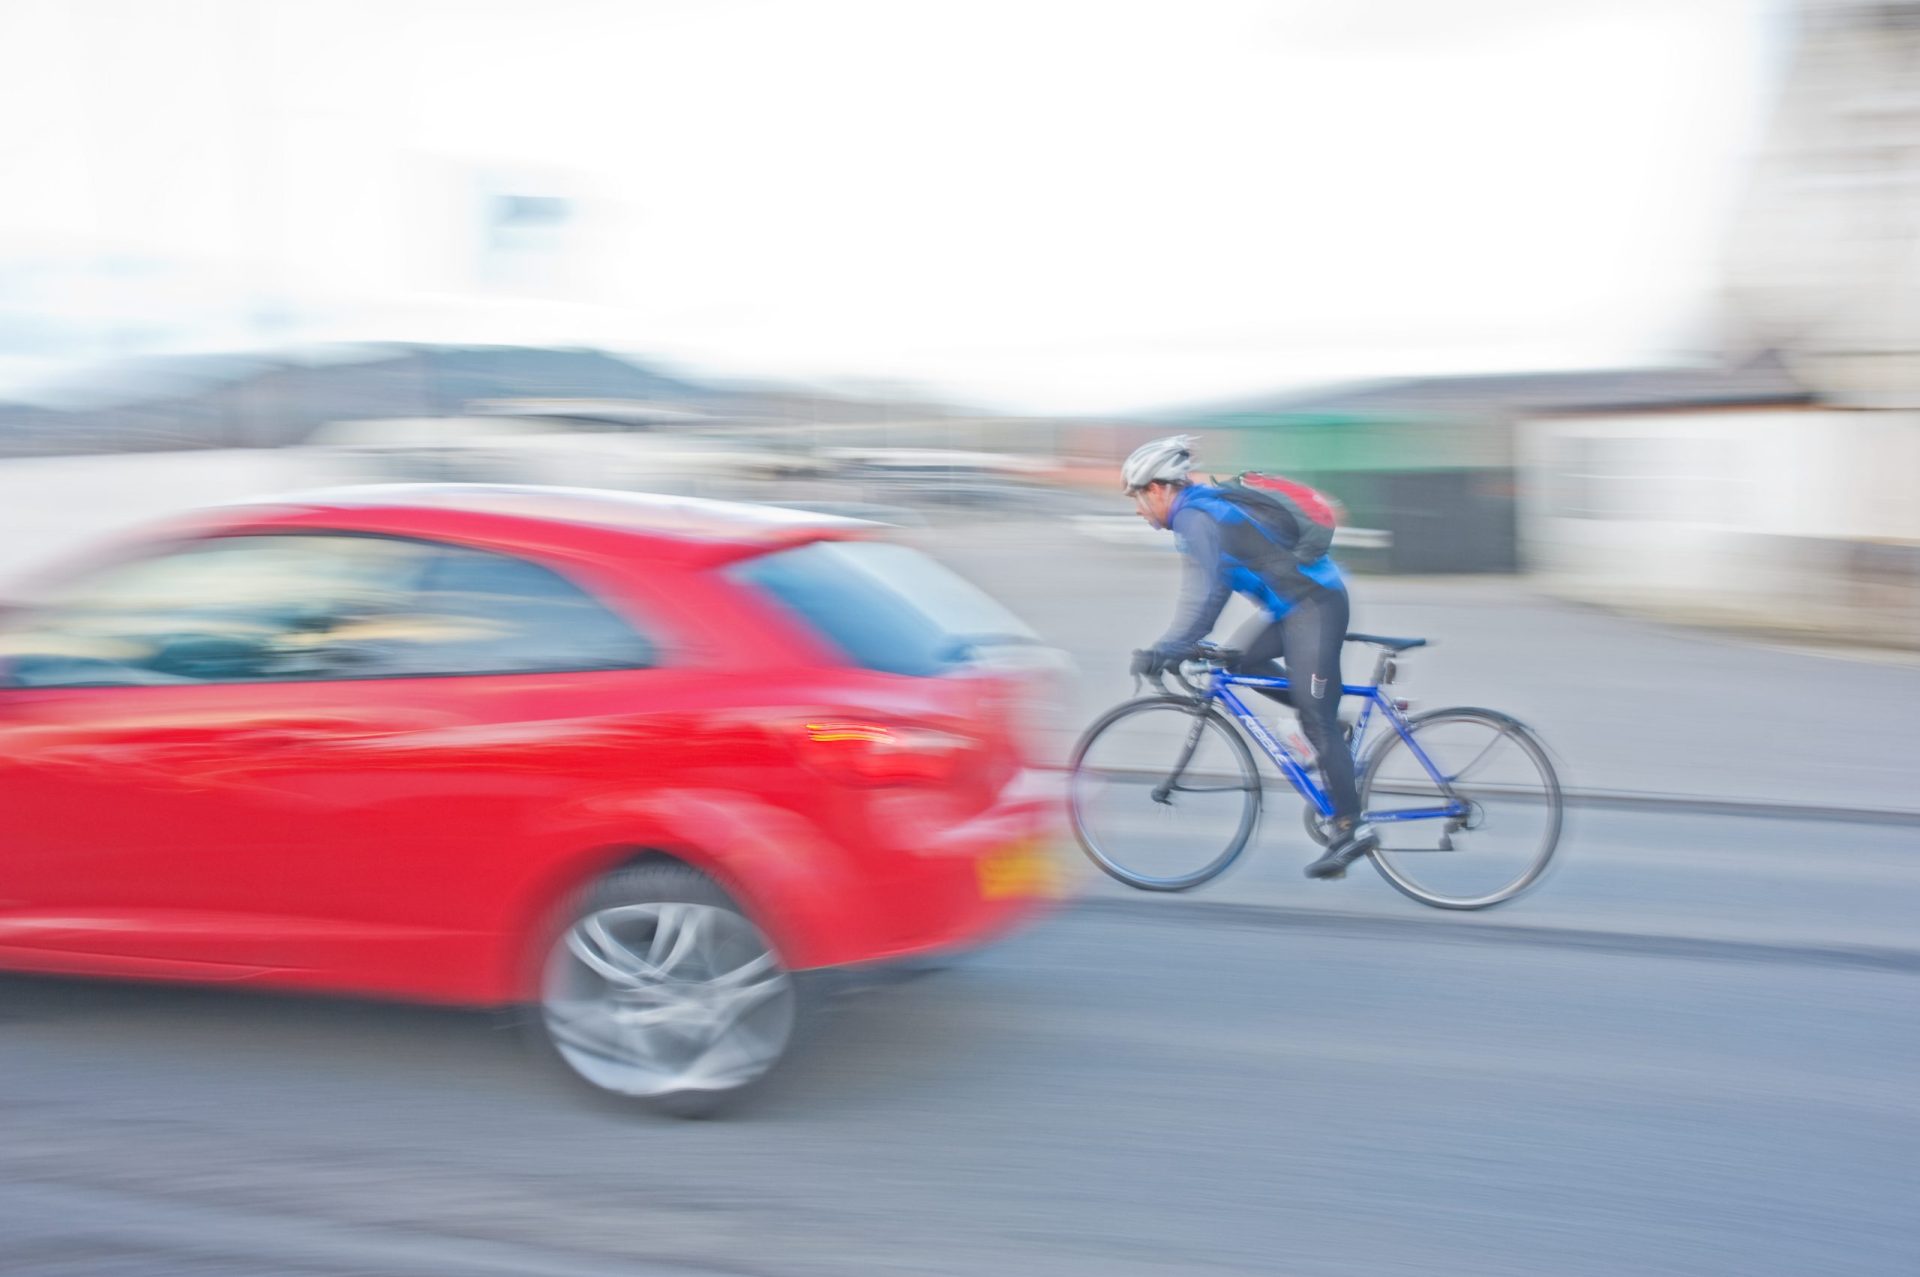 Se for a conduzir sabe a que distância lateral se deve manter de uma bicicleta?